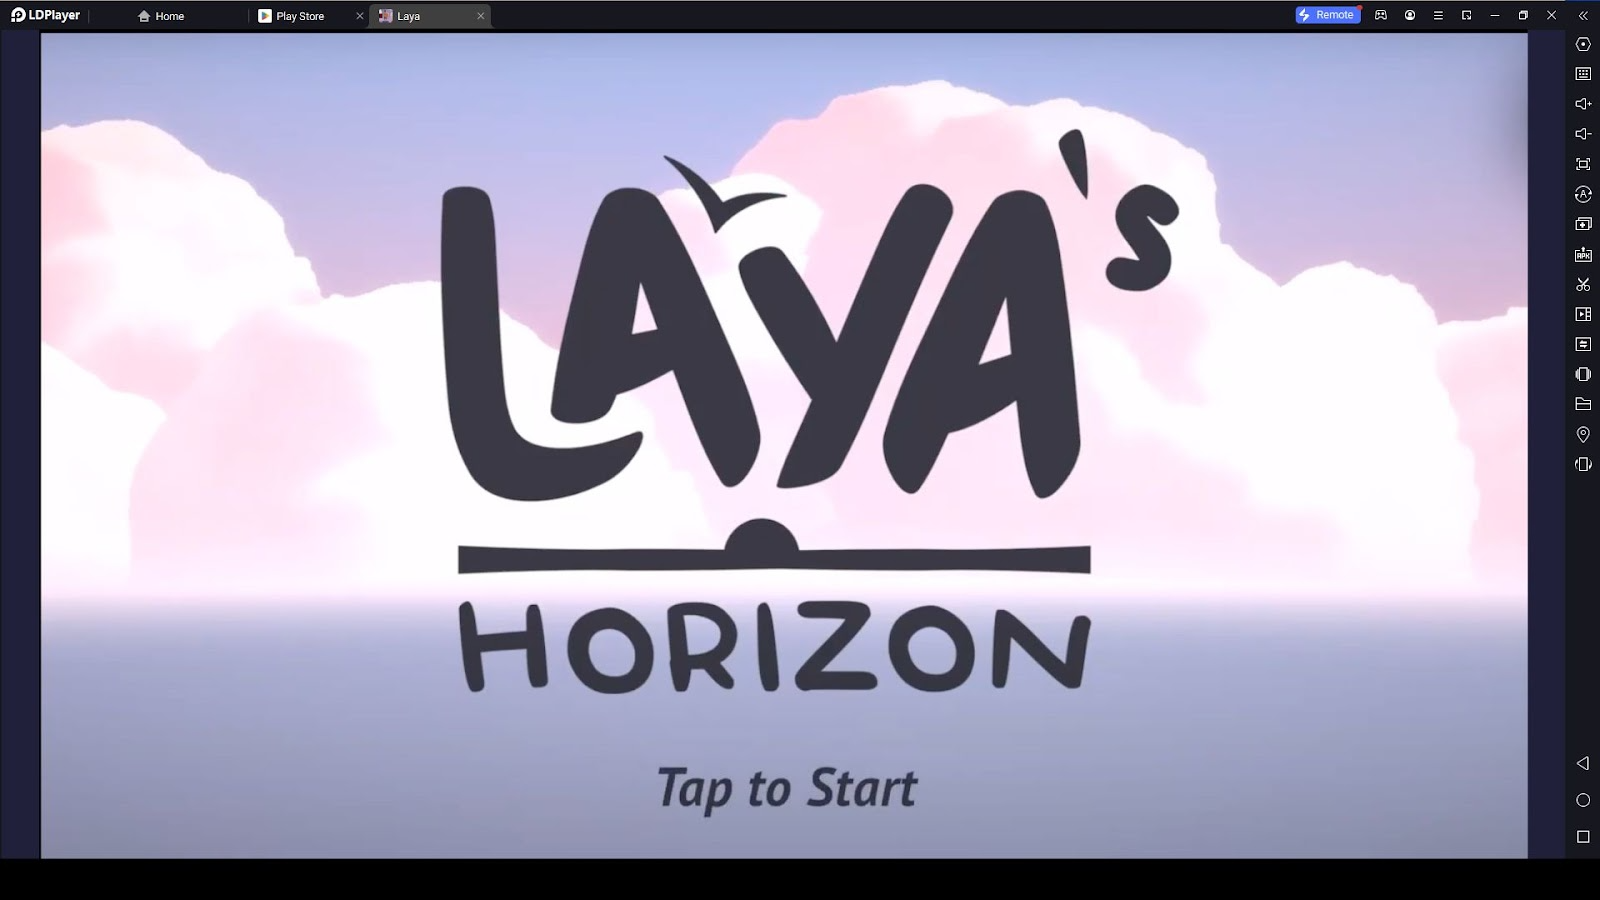 Laya's Horizon Beginner Guide